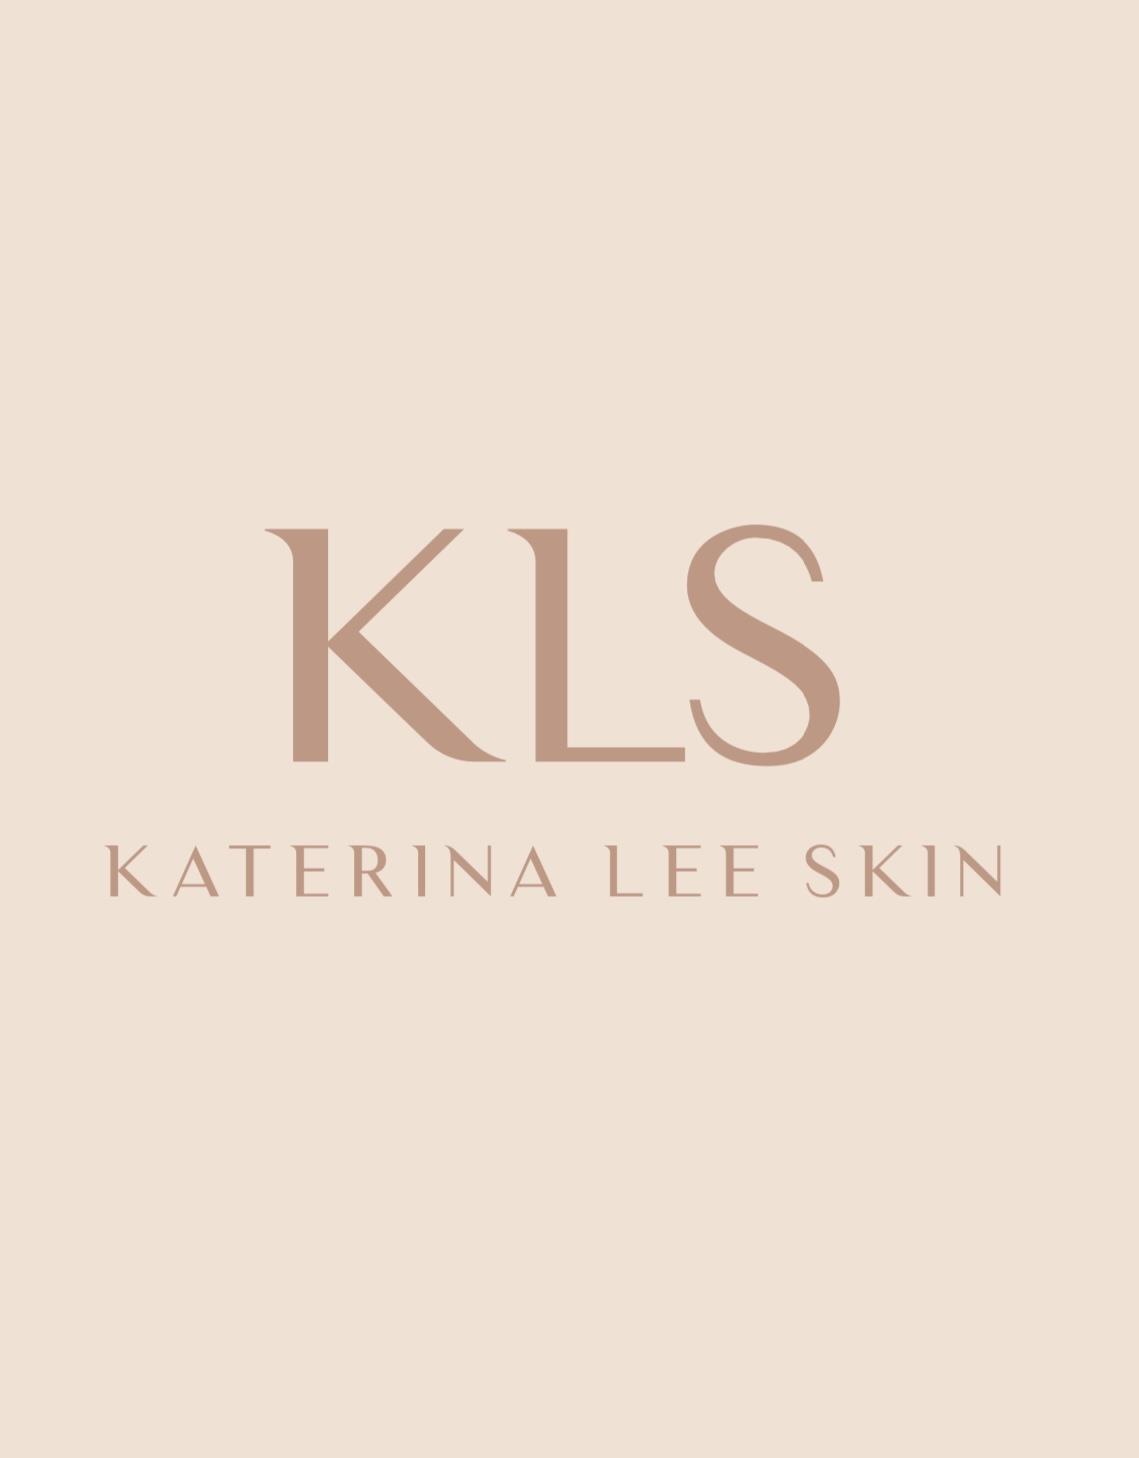 Katerina Lee Skin